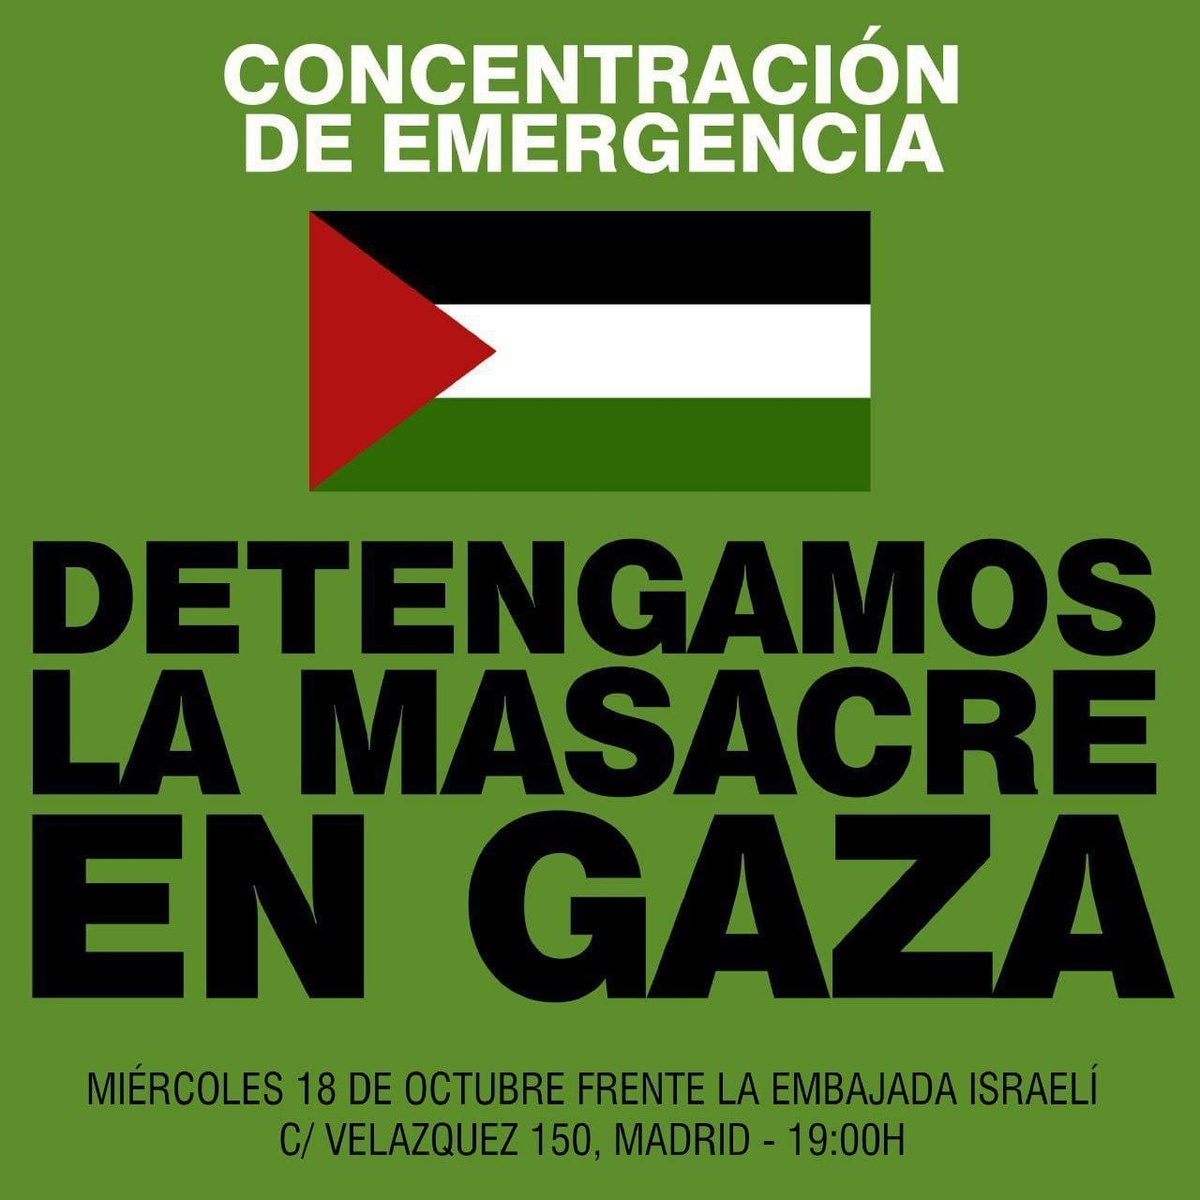 Concentración de emergencia: Detengamos la masacre en Gaza